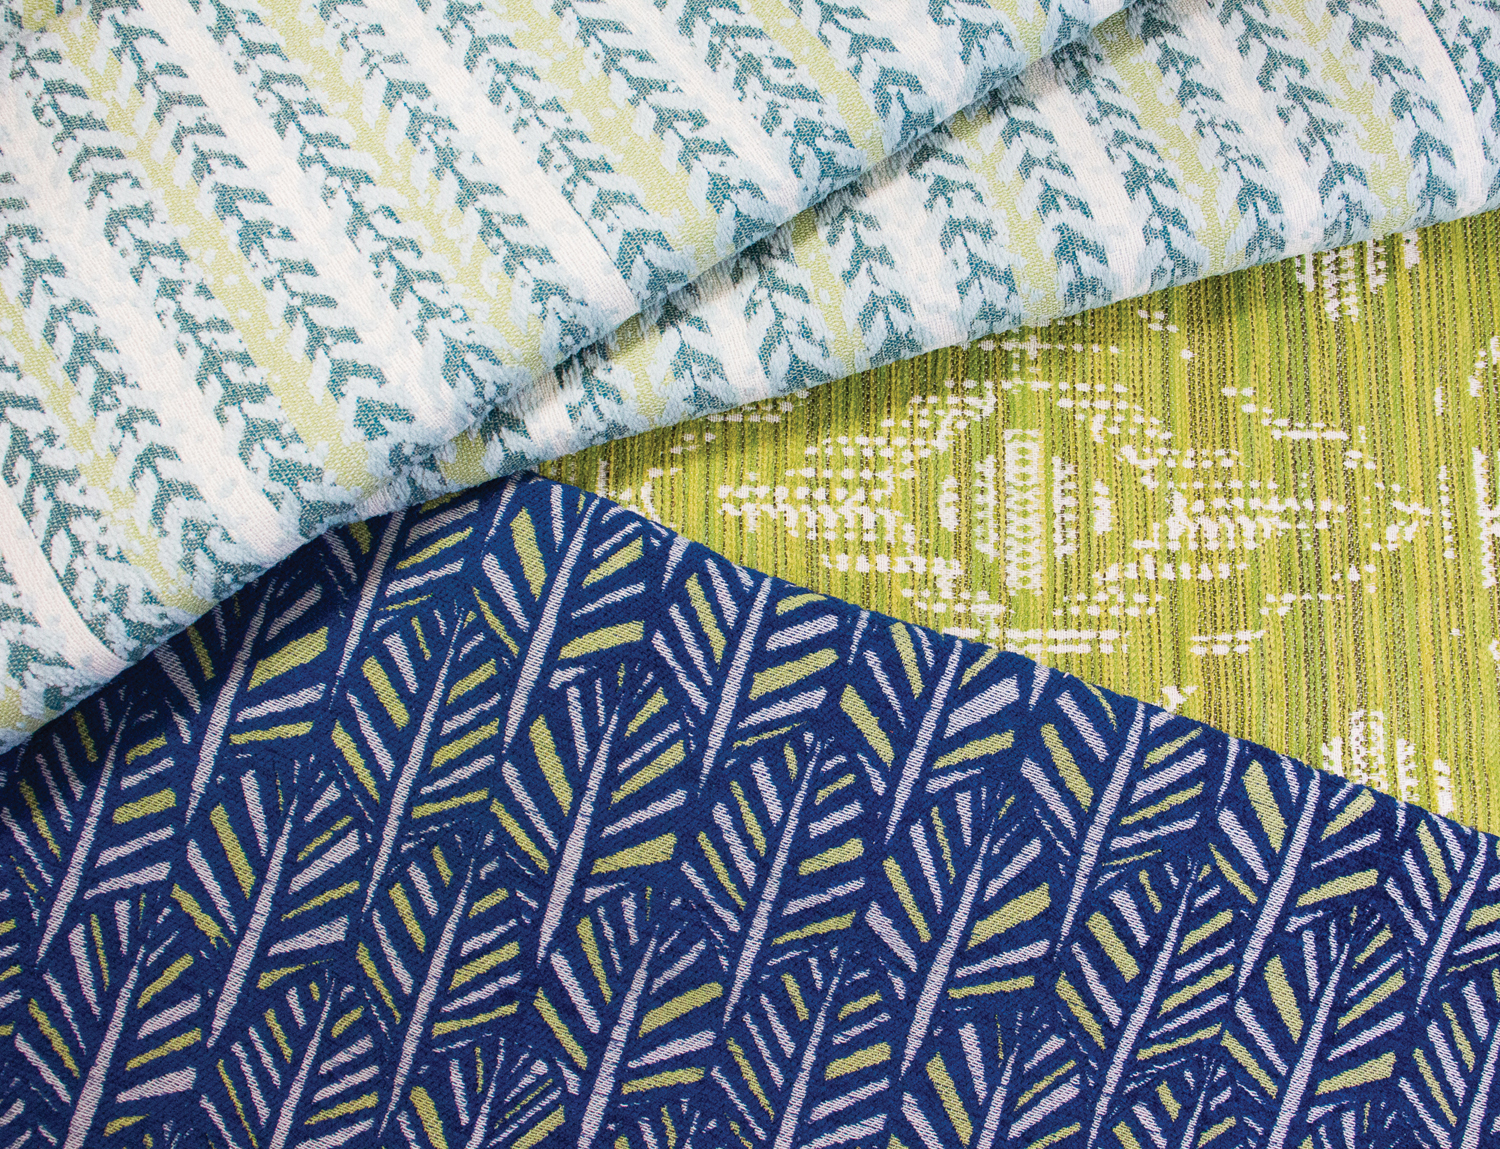 InsideOut Fabrics–Curio, Linden and Korra Image